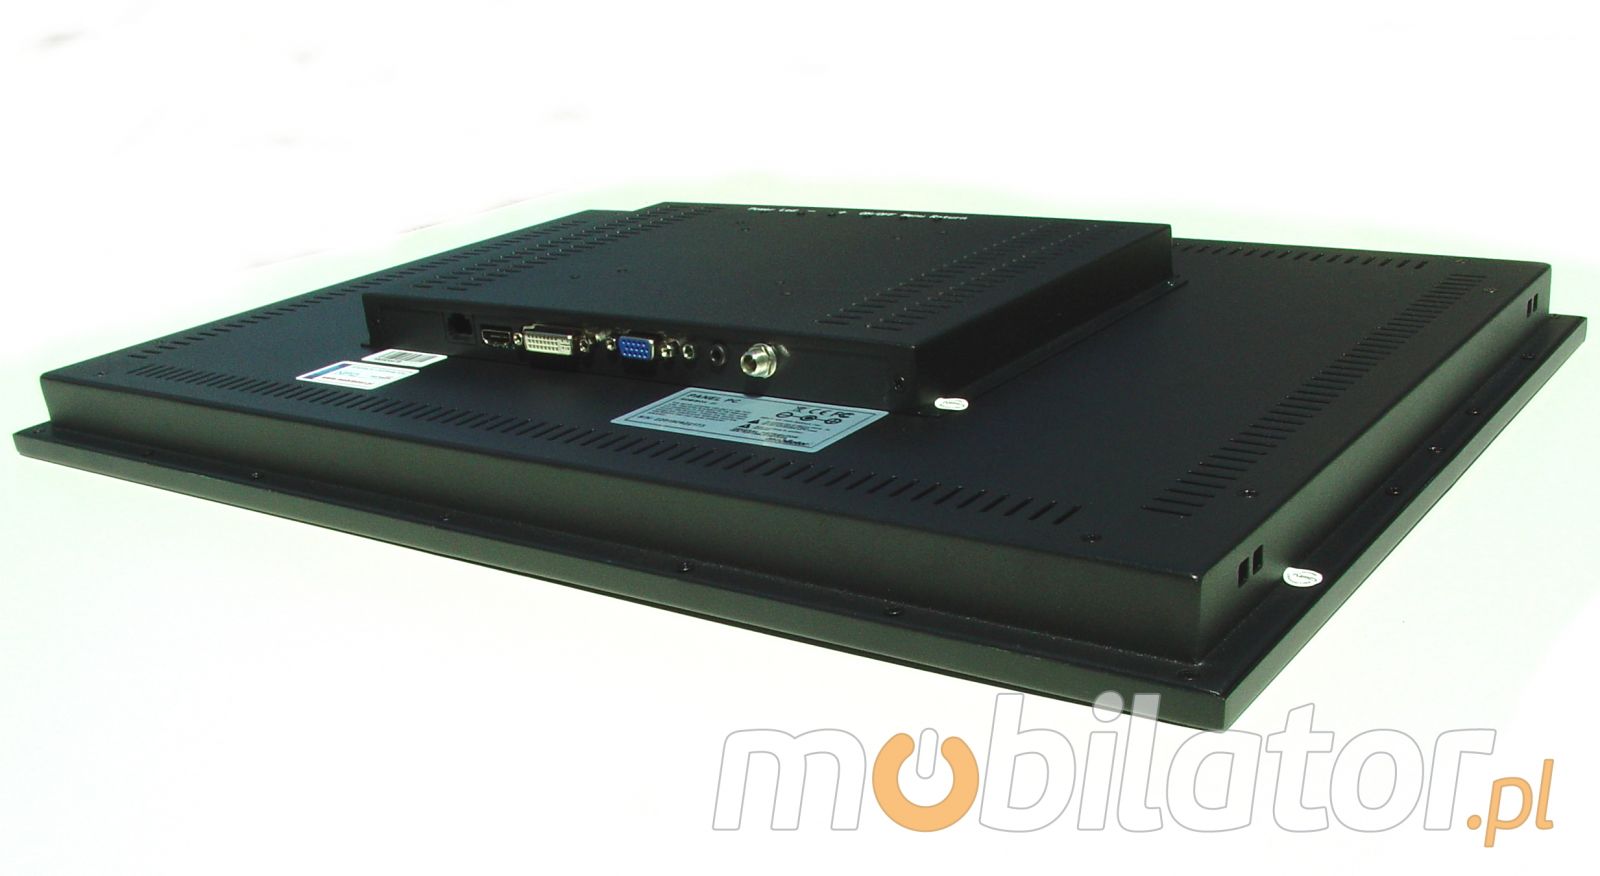  Monitor dotykowy PC  Monitor dotykowy Ekran pojemnociowy capacitive wywietlacz 10 cali LED mobilator.pl New Portable Devices VGA HDMI